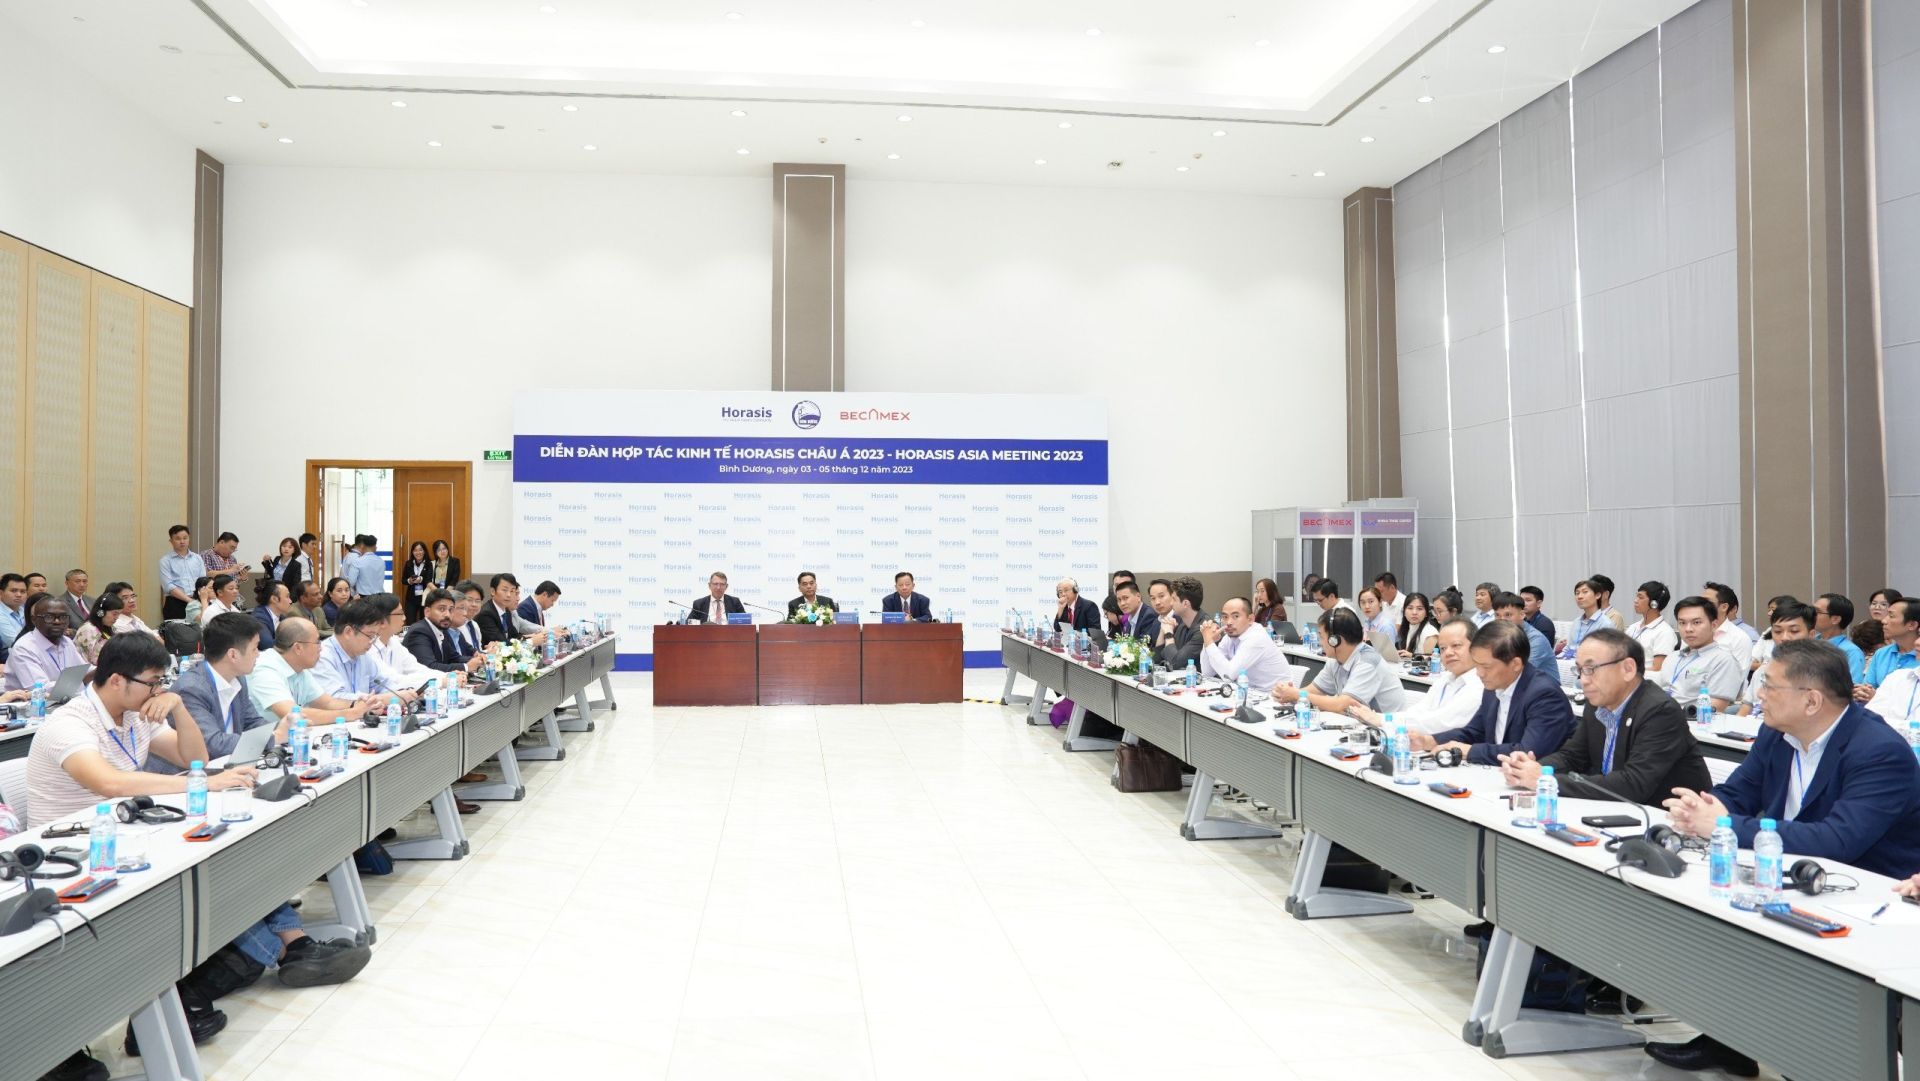 Diễn đàn Hợp tác kinh tế Horasis Châu Á 2023 đang diễn ra tại Bình Dương